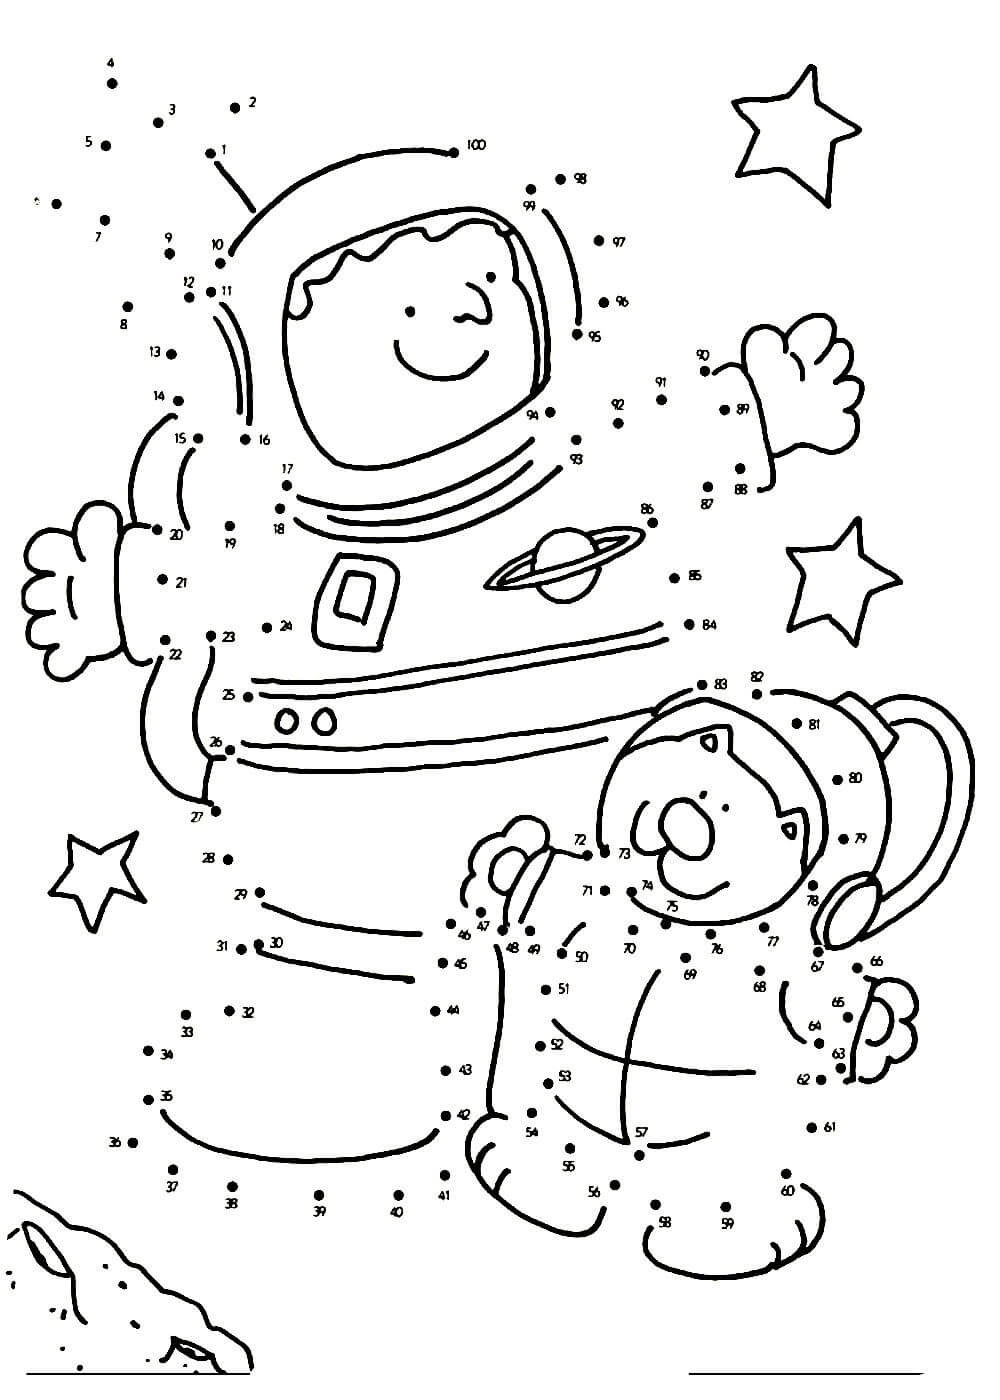 Задания ко дню космонавтики. Раскраска. В космосе. Космос раскраска для детей. Космонавтика раскраски для детей. Раскраска для малышей. Космос.